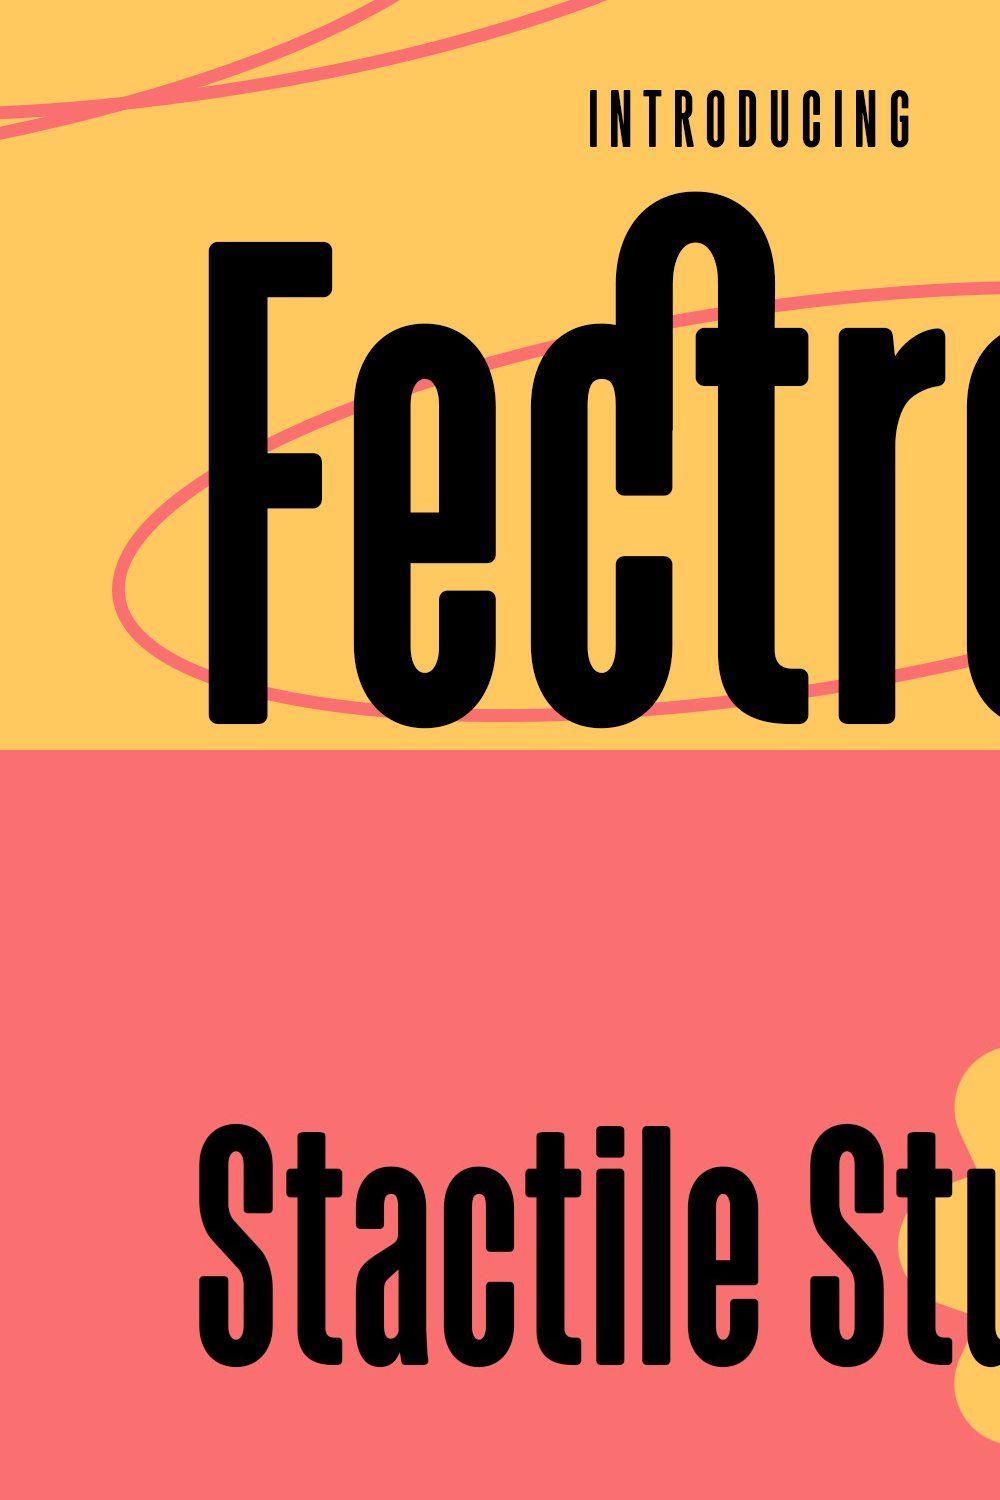 Fectron Condensed Sans Font pinterest preview image.